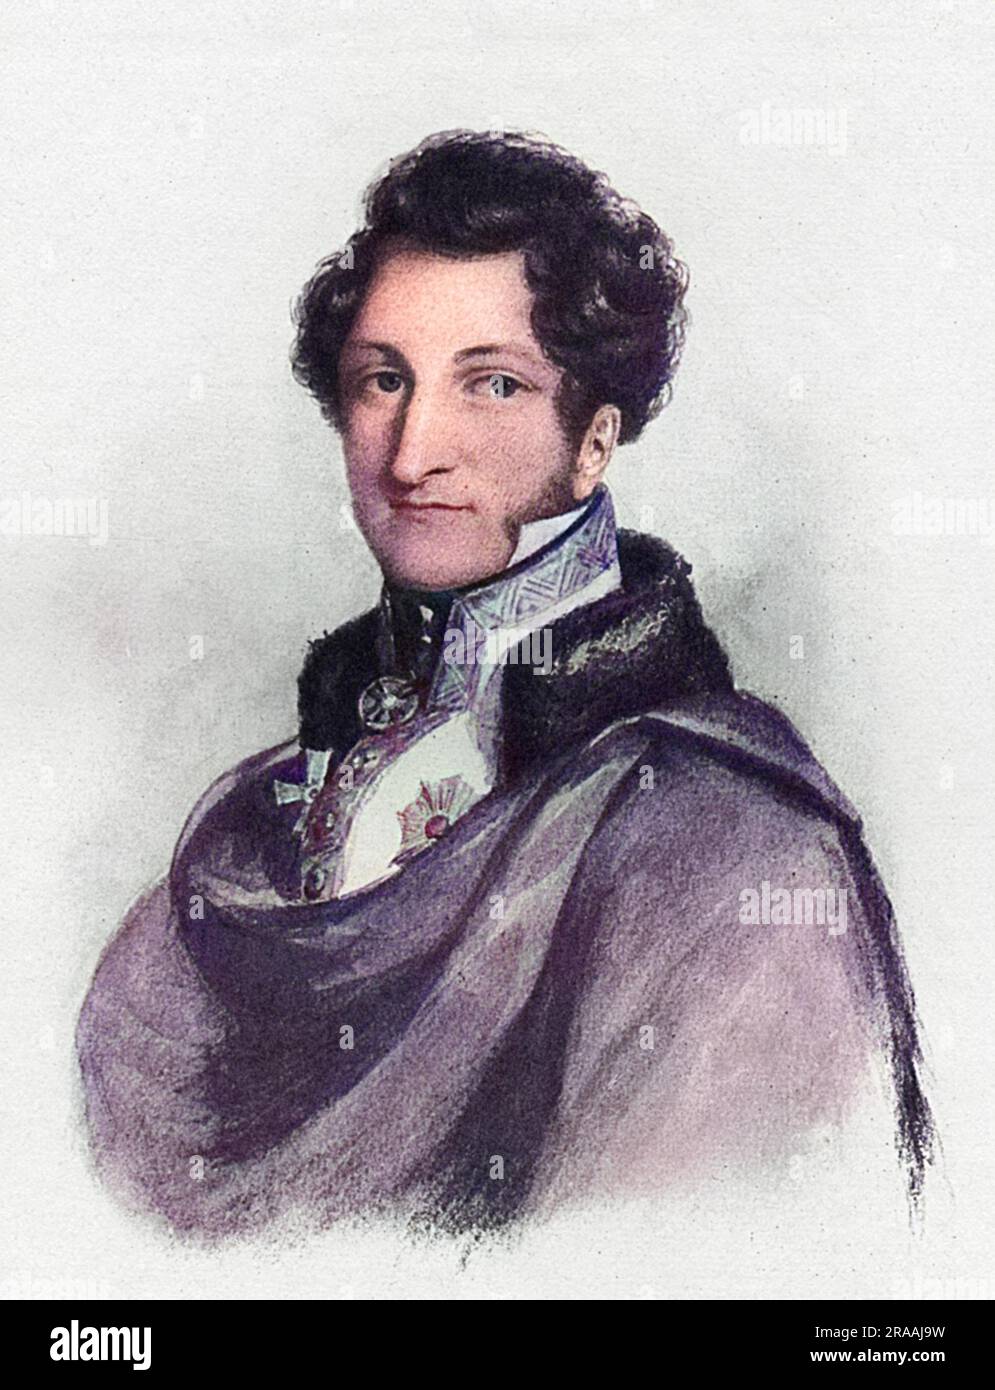 S.d. Ernest I., Herzog von Sachsen-Coburg und Gotha (1784-1844), der Vater von Albert der Prinzgemahl von Königin Victoria. Datum: 1820s Stockfoto